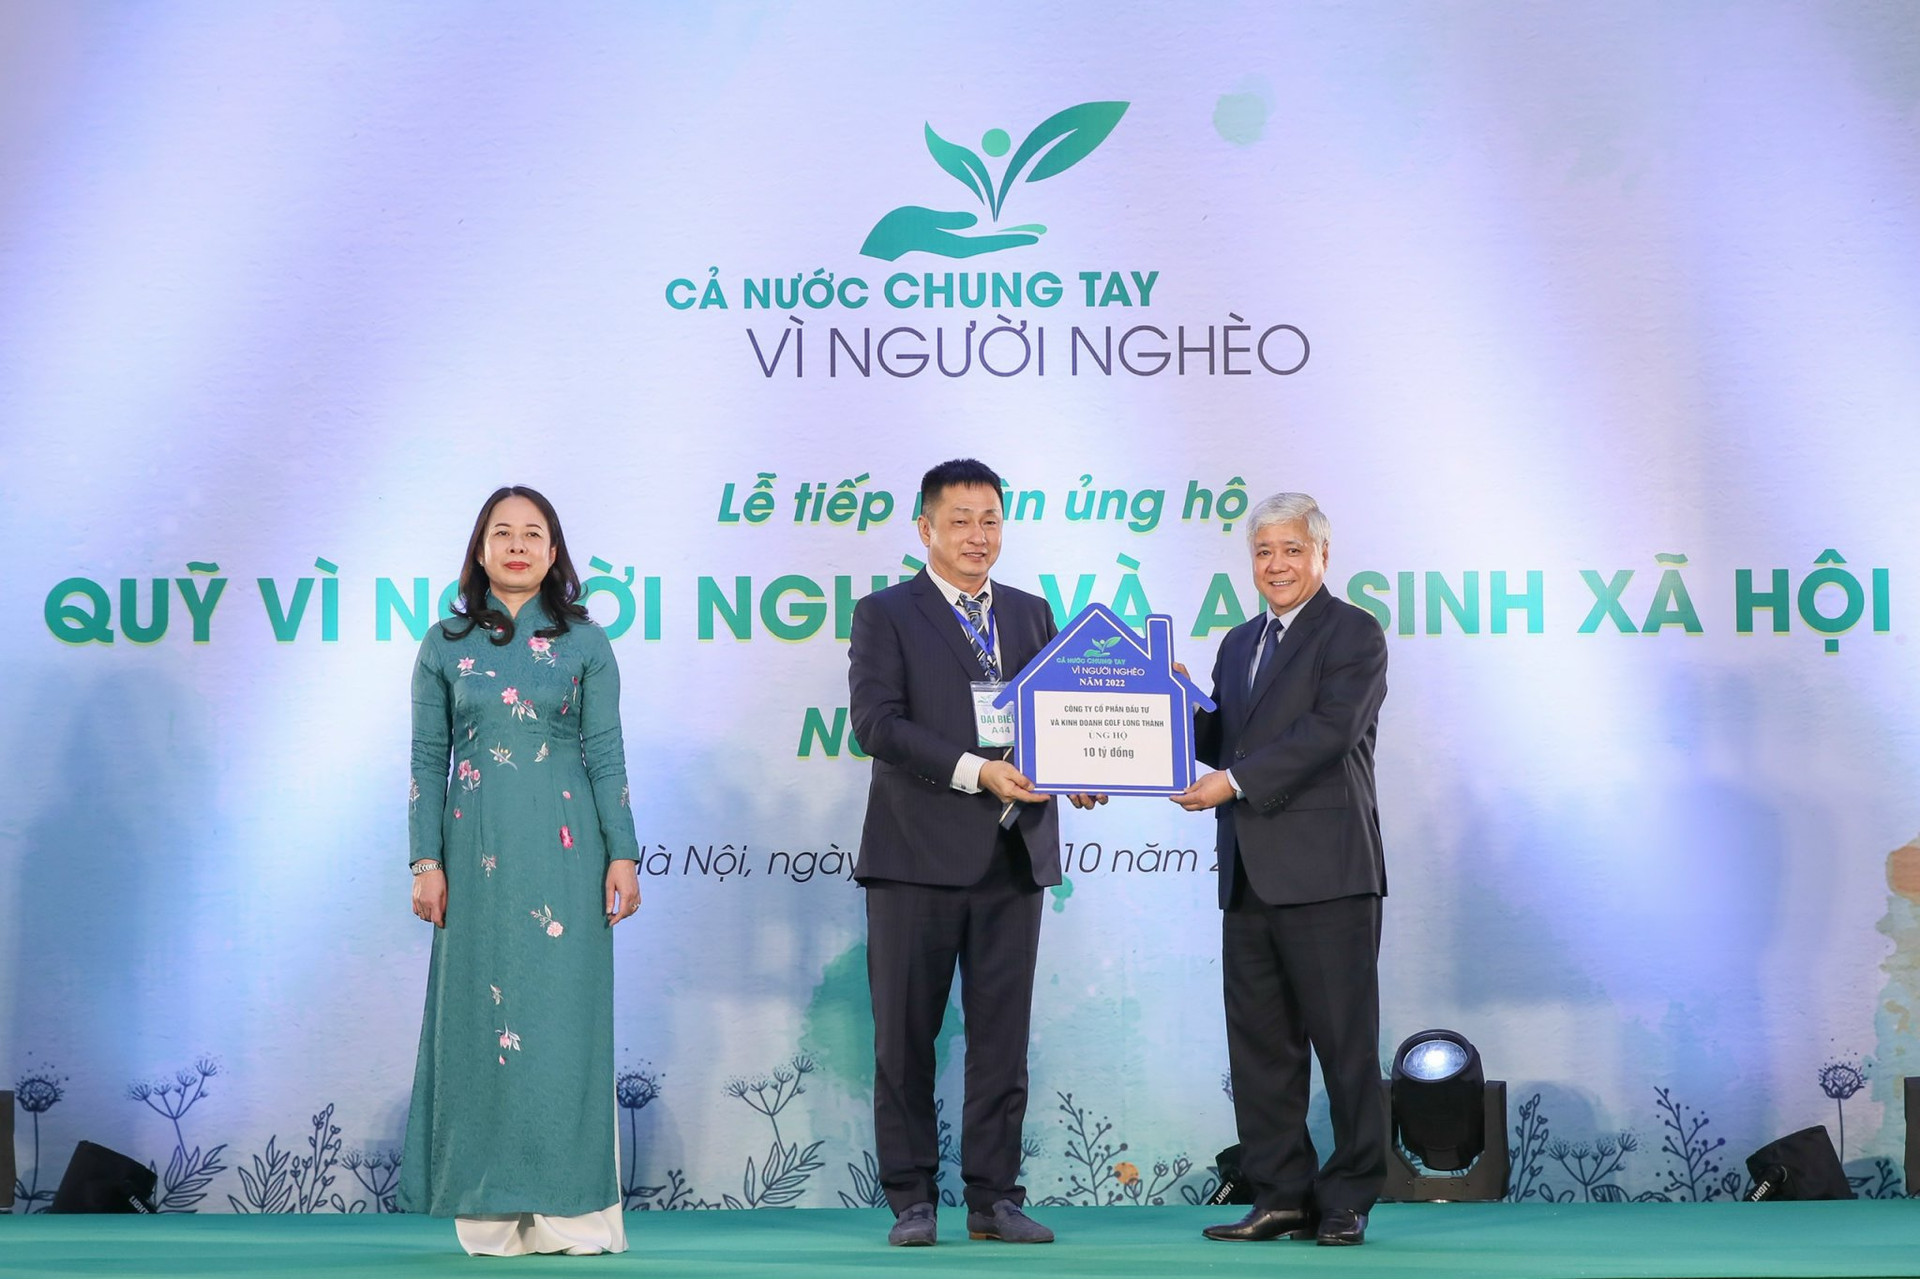 Ông Lê Huy Hoàng, Thành viên HĐQT Golf Long Thành (ở giữa) trao tặng 10 tỷ đồng cho Quỹ “Vì người nghèo và an sinh xã hội” năm 2022.